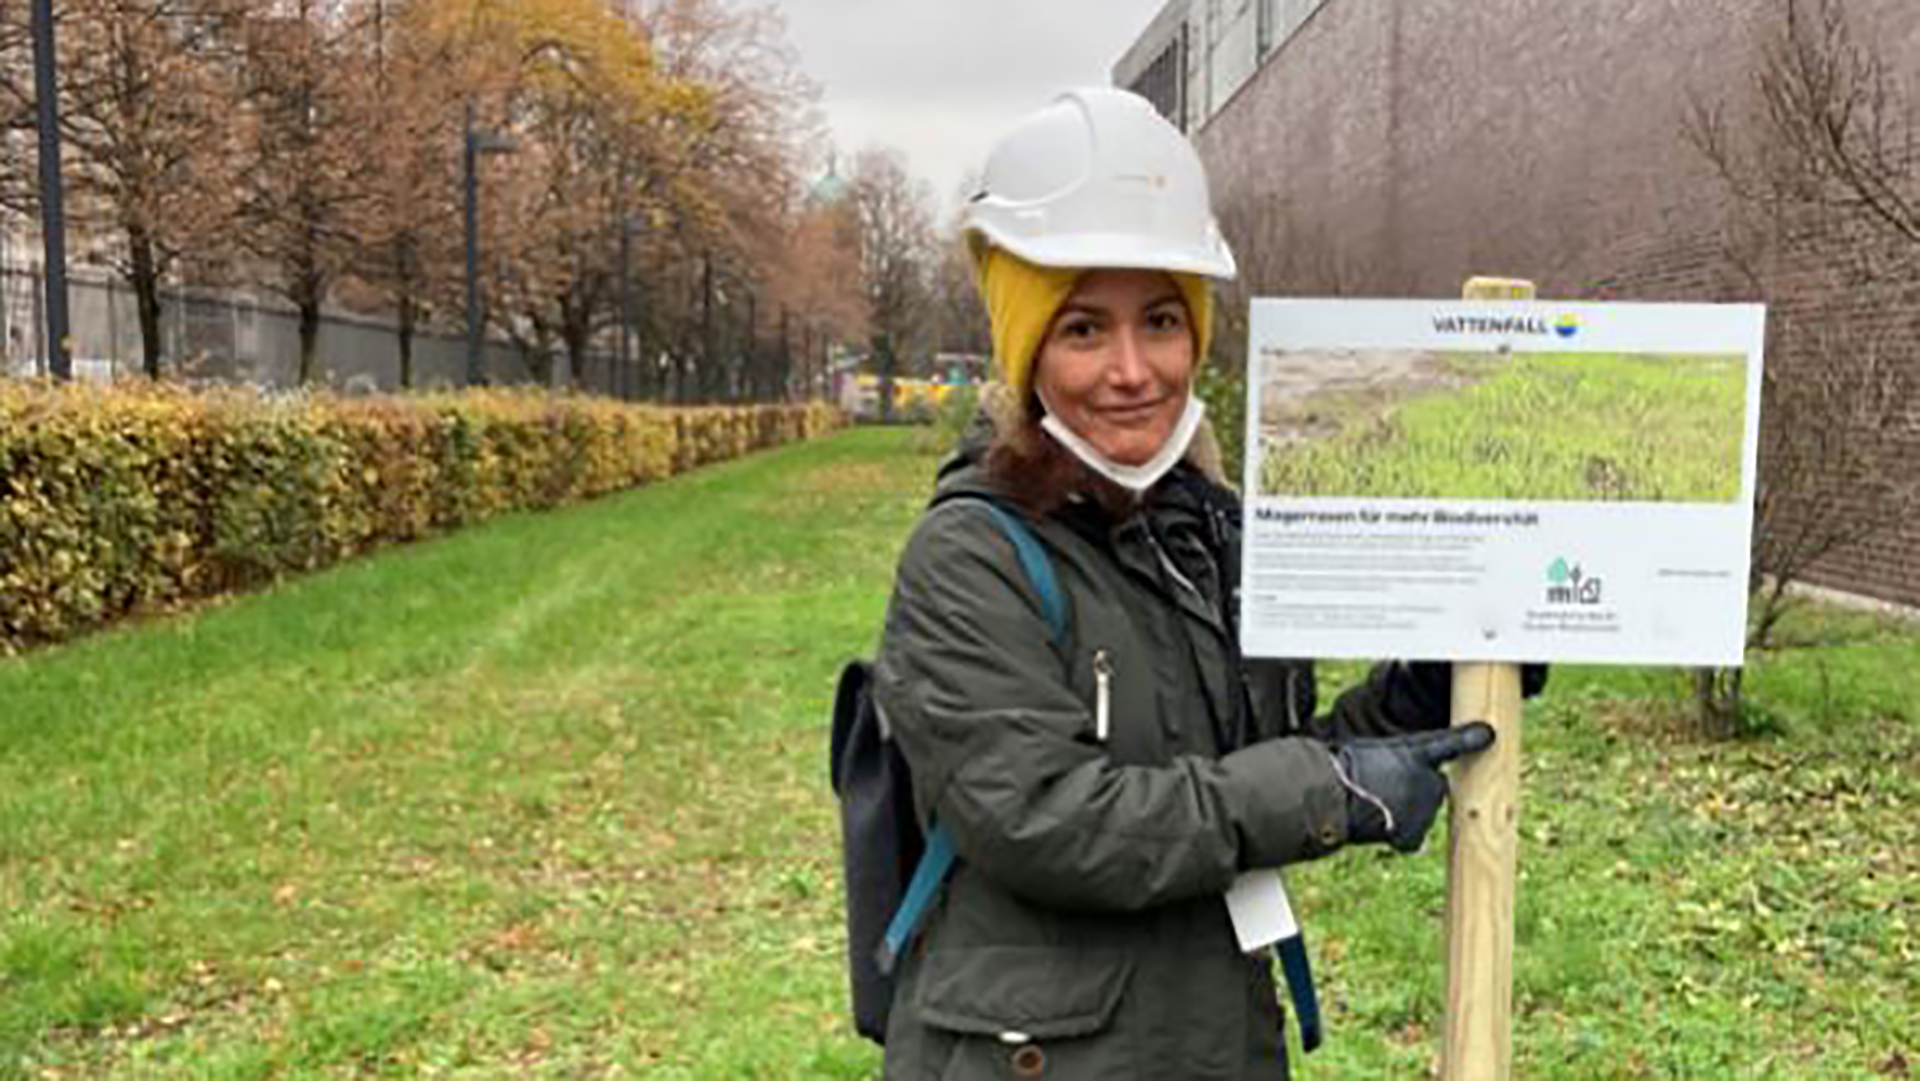 Gissela Riccio mit dem Hinweisschild "Magerrasen für mehr Biodiversität" am Vattenfall Wärme Standort Heizkraftwerk Mitte in Berlin 